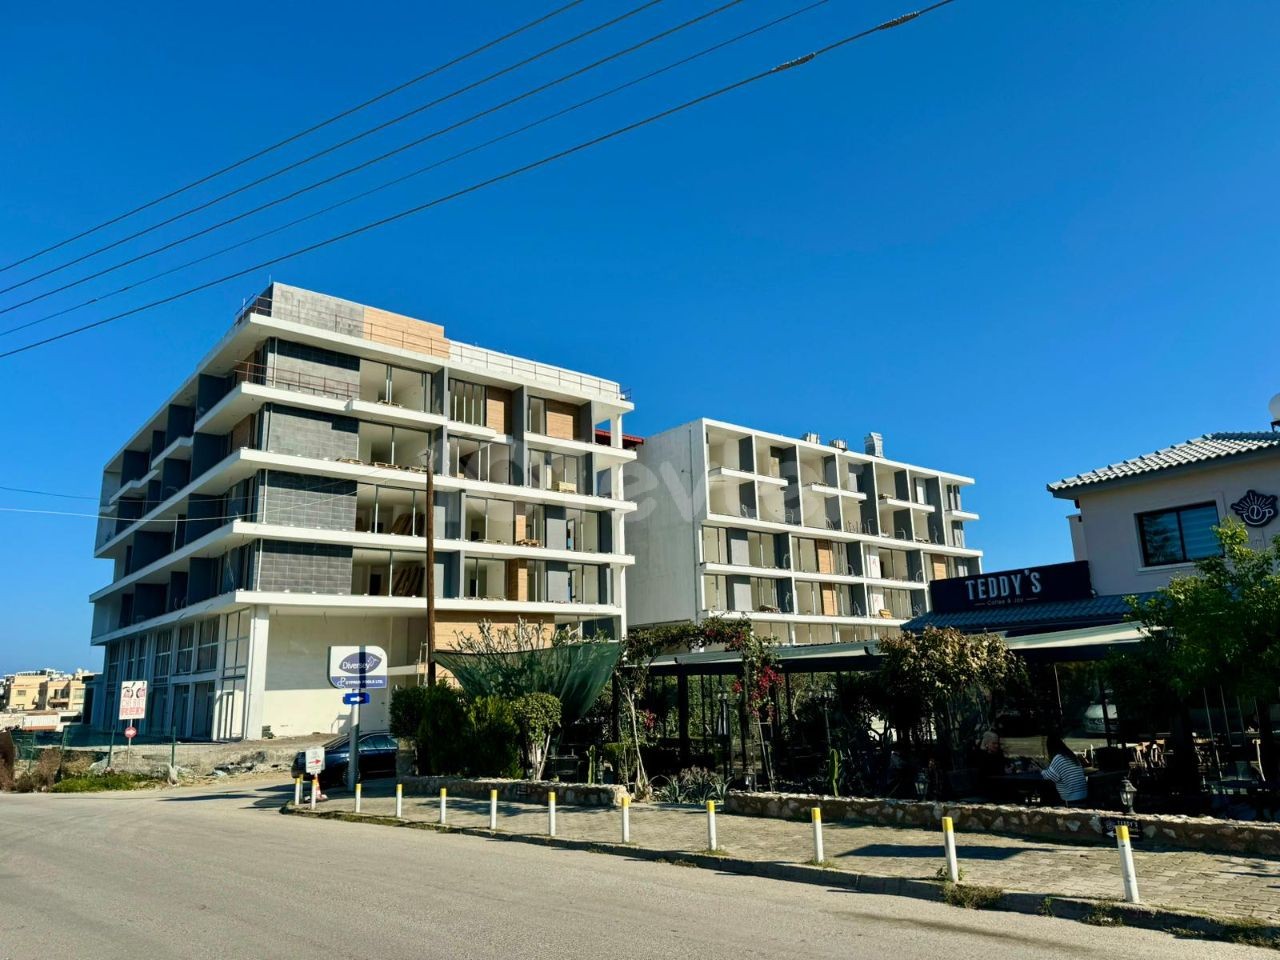 Büro zum Verkauf in der zentralen Karakum-Region Kyrenia, Zypern